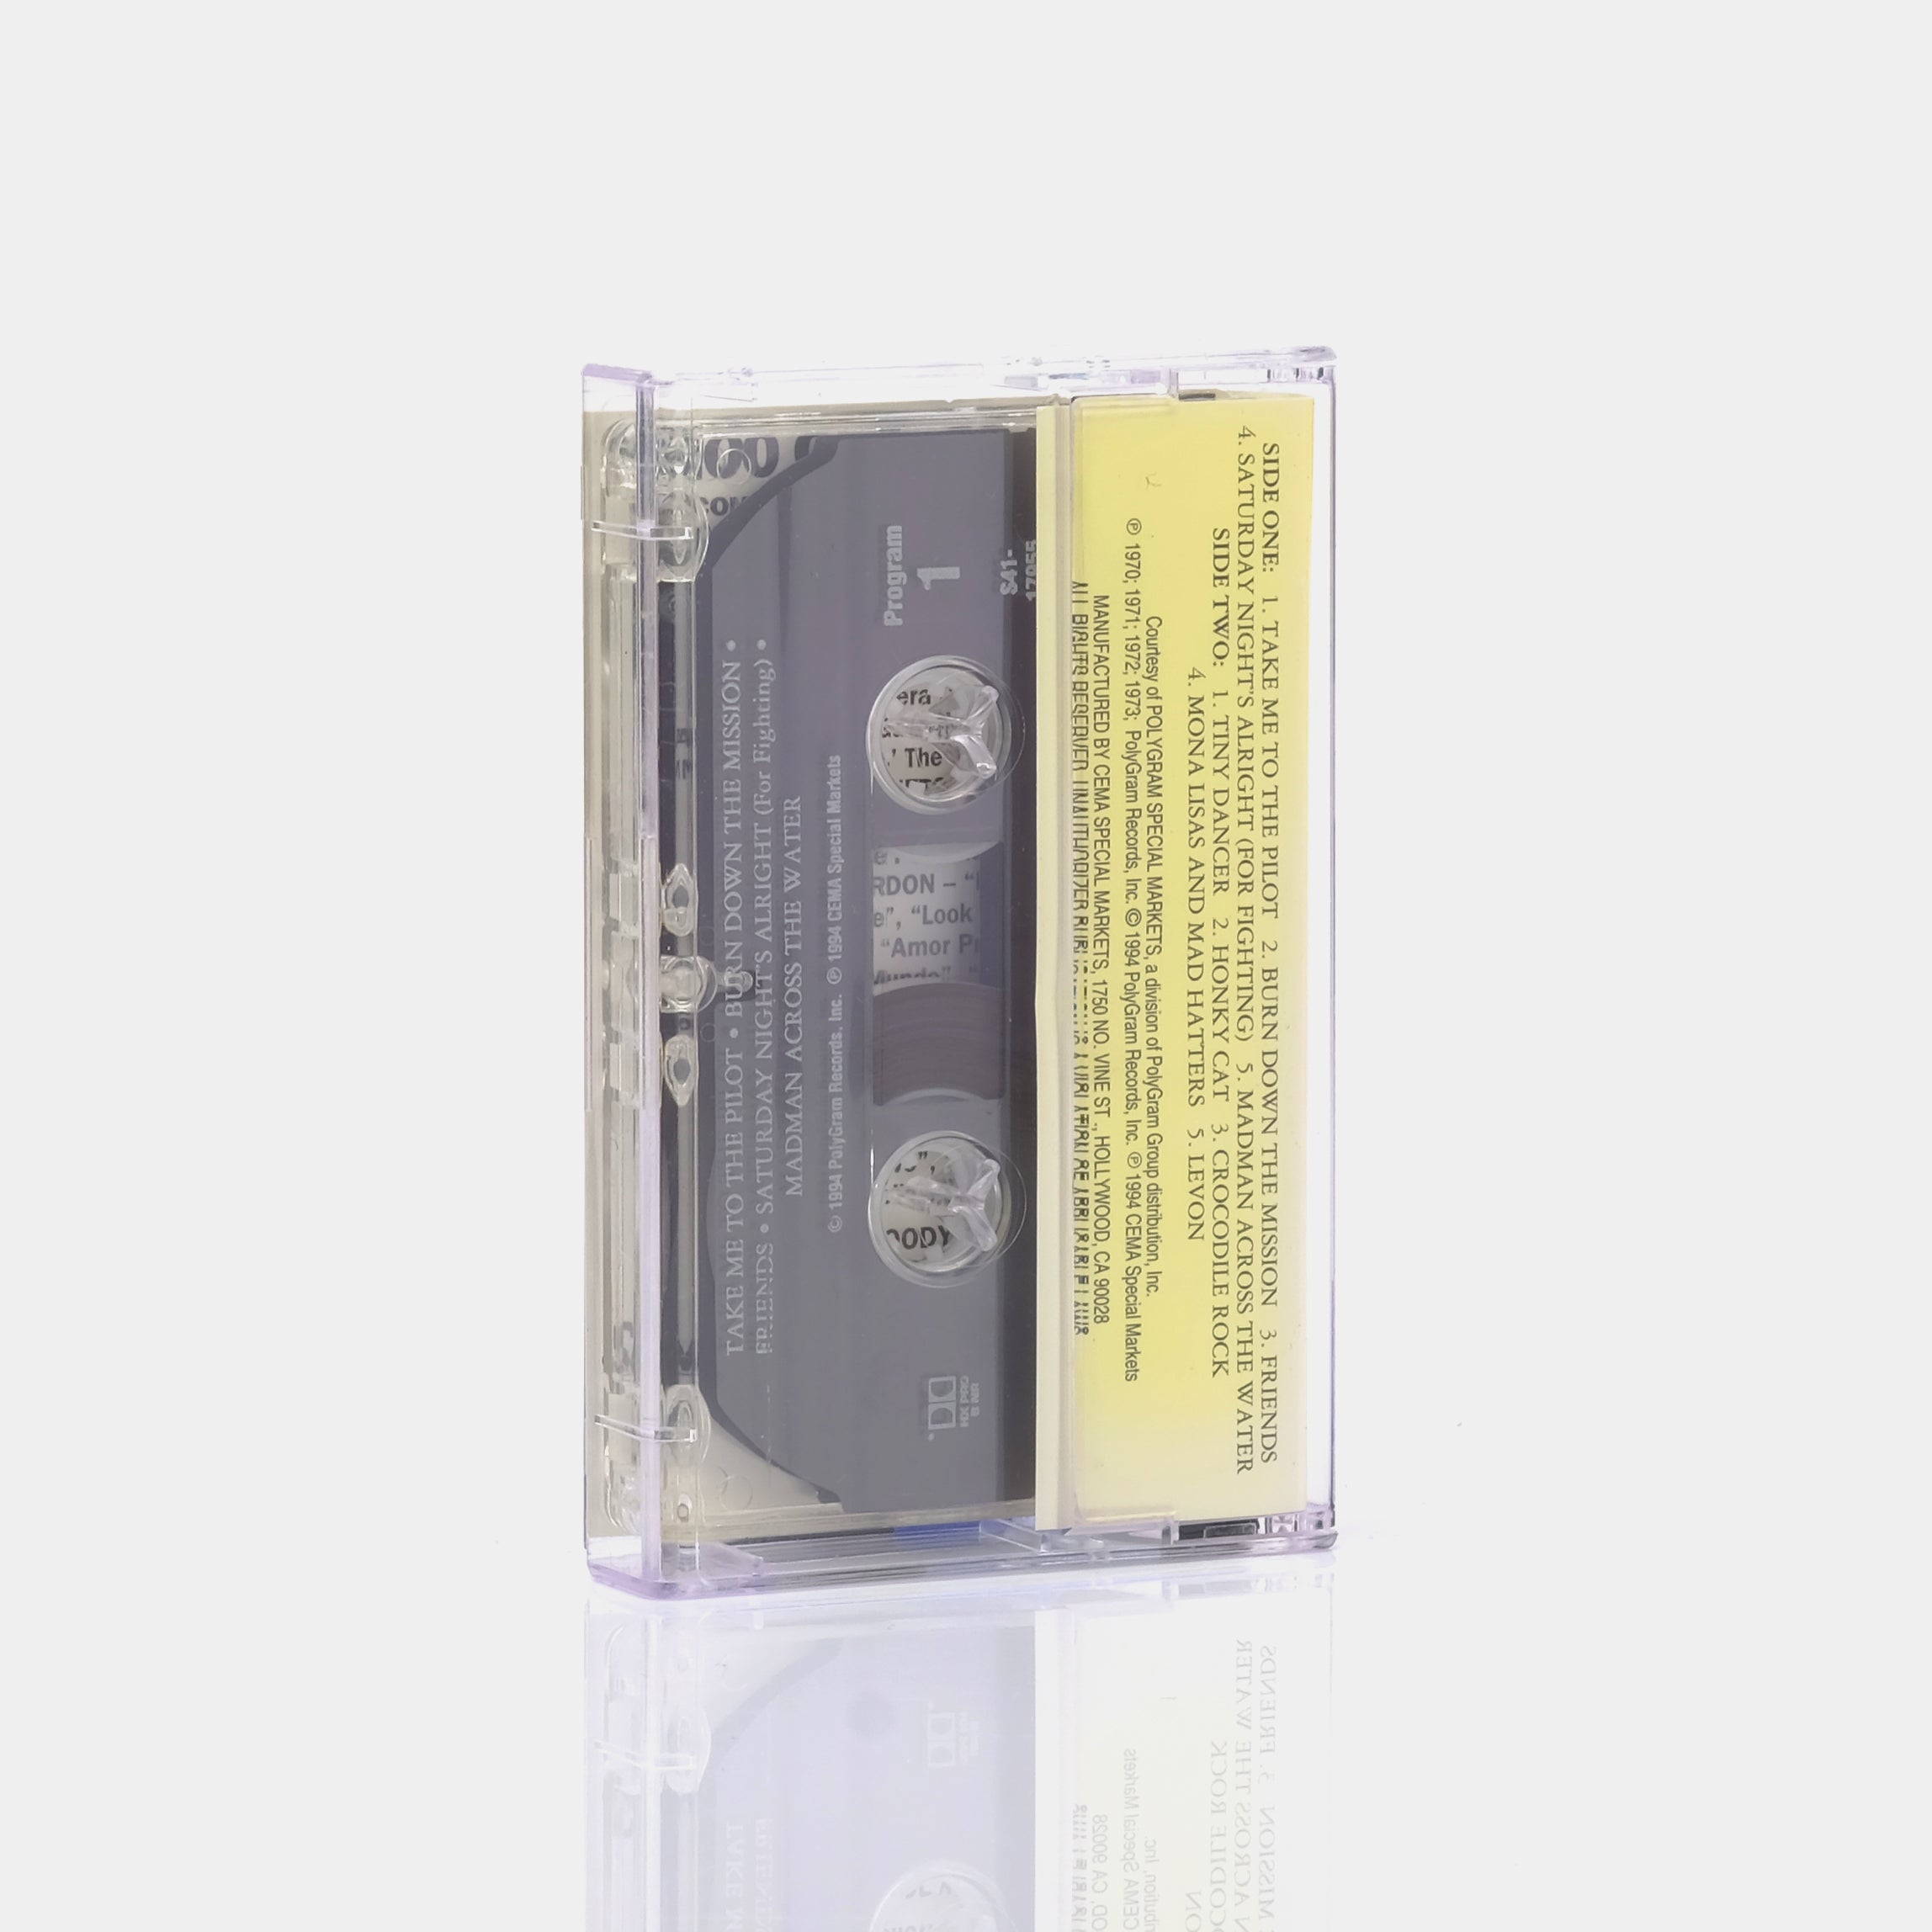 Elton John - Classic Elton John Cassette Tape